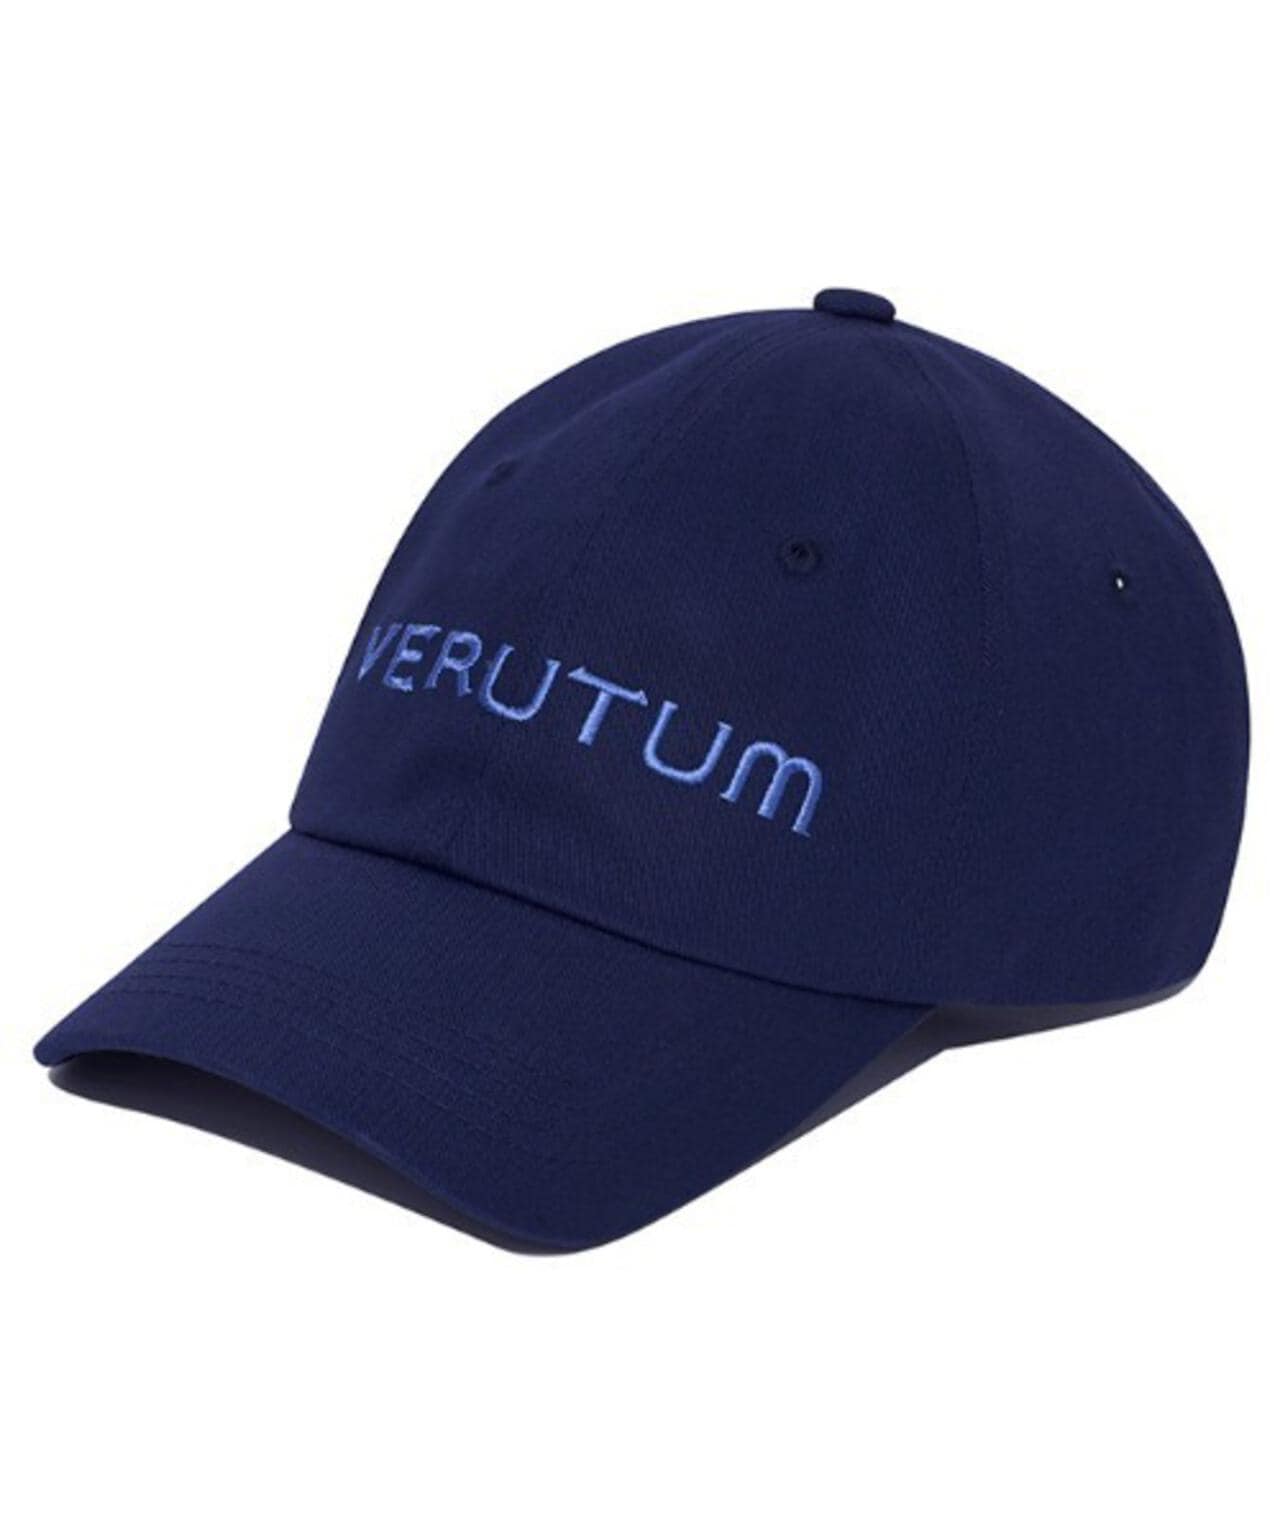 VERUTUM/ヴェルタム/Front Logo Cap